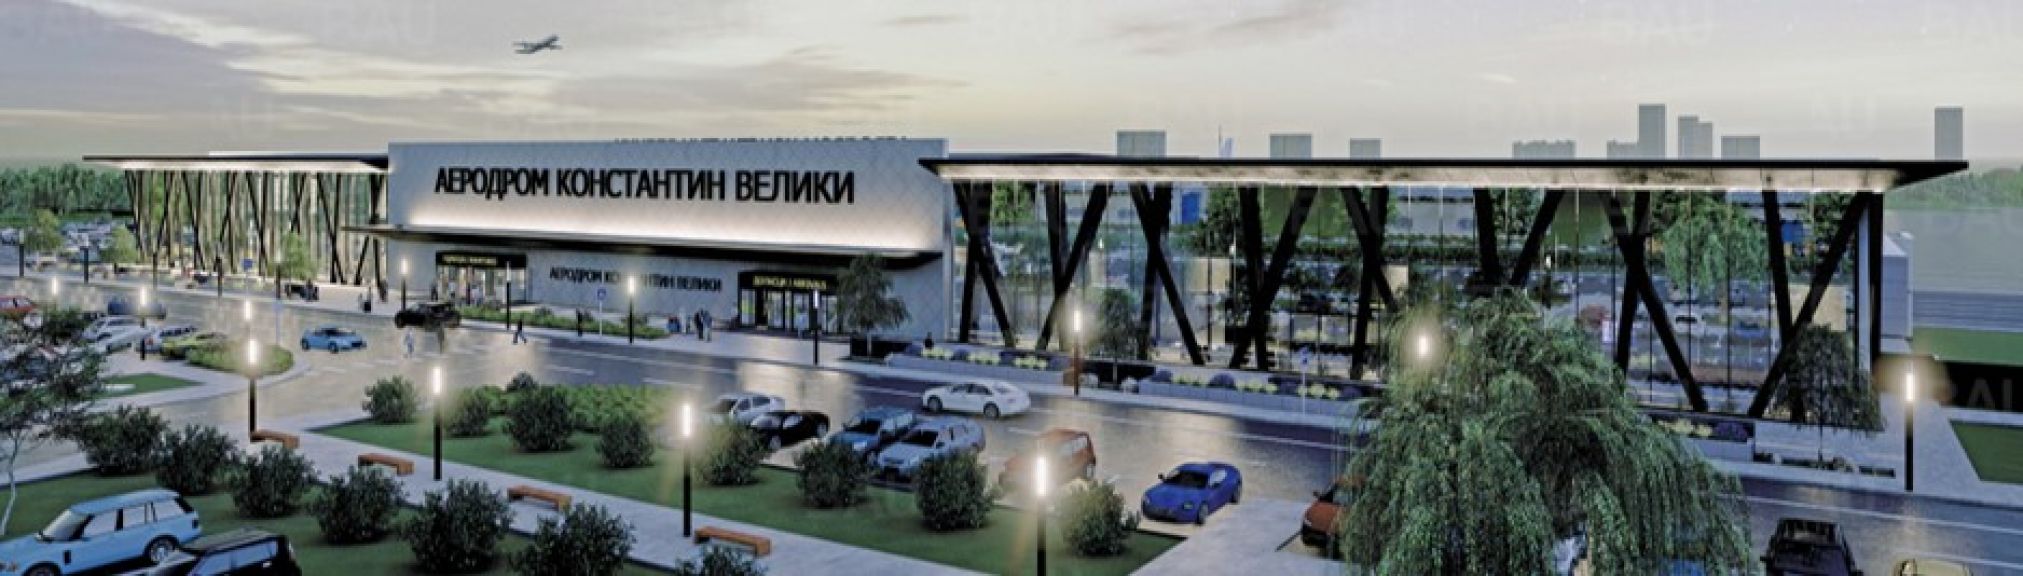 Evo kako će izgledati novi putnički terminal na aerodromu Konstantin Veliki u Nišu - Planirano i rušenje postojeće zgrade i gradnja nove (FOTO)